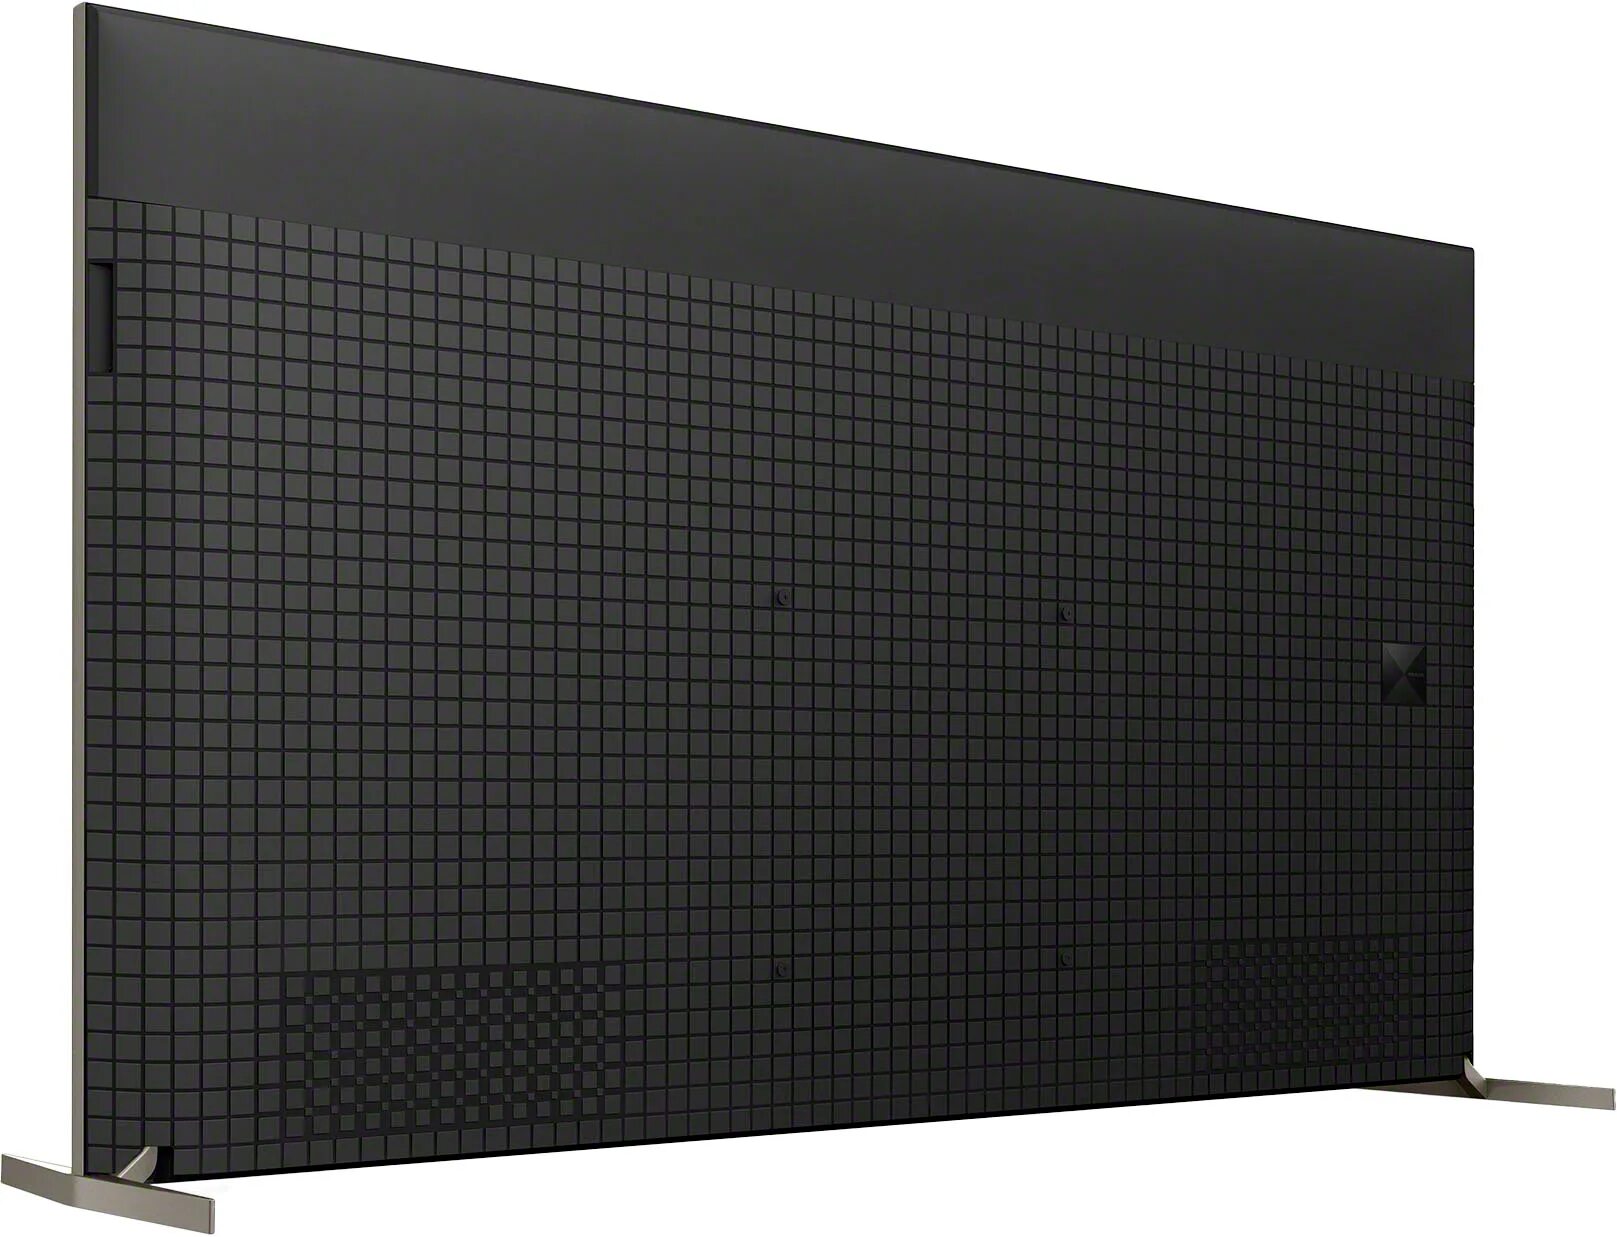 Sony XR-65x95j. Телевизор Sony XR-65x95j. Телевизор Sony xr85x95j (2021). Телевизор 85" Sony XR-85x95j.